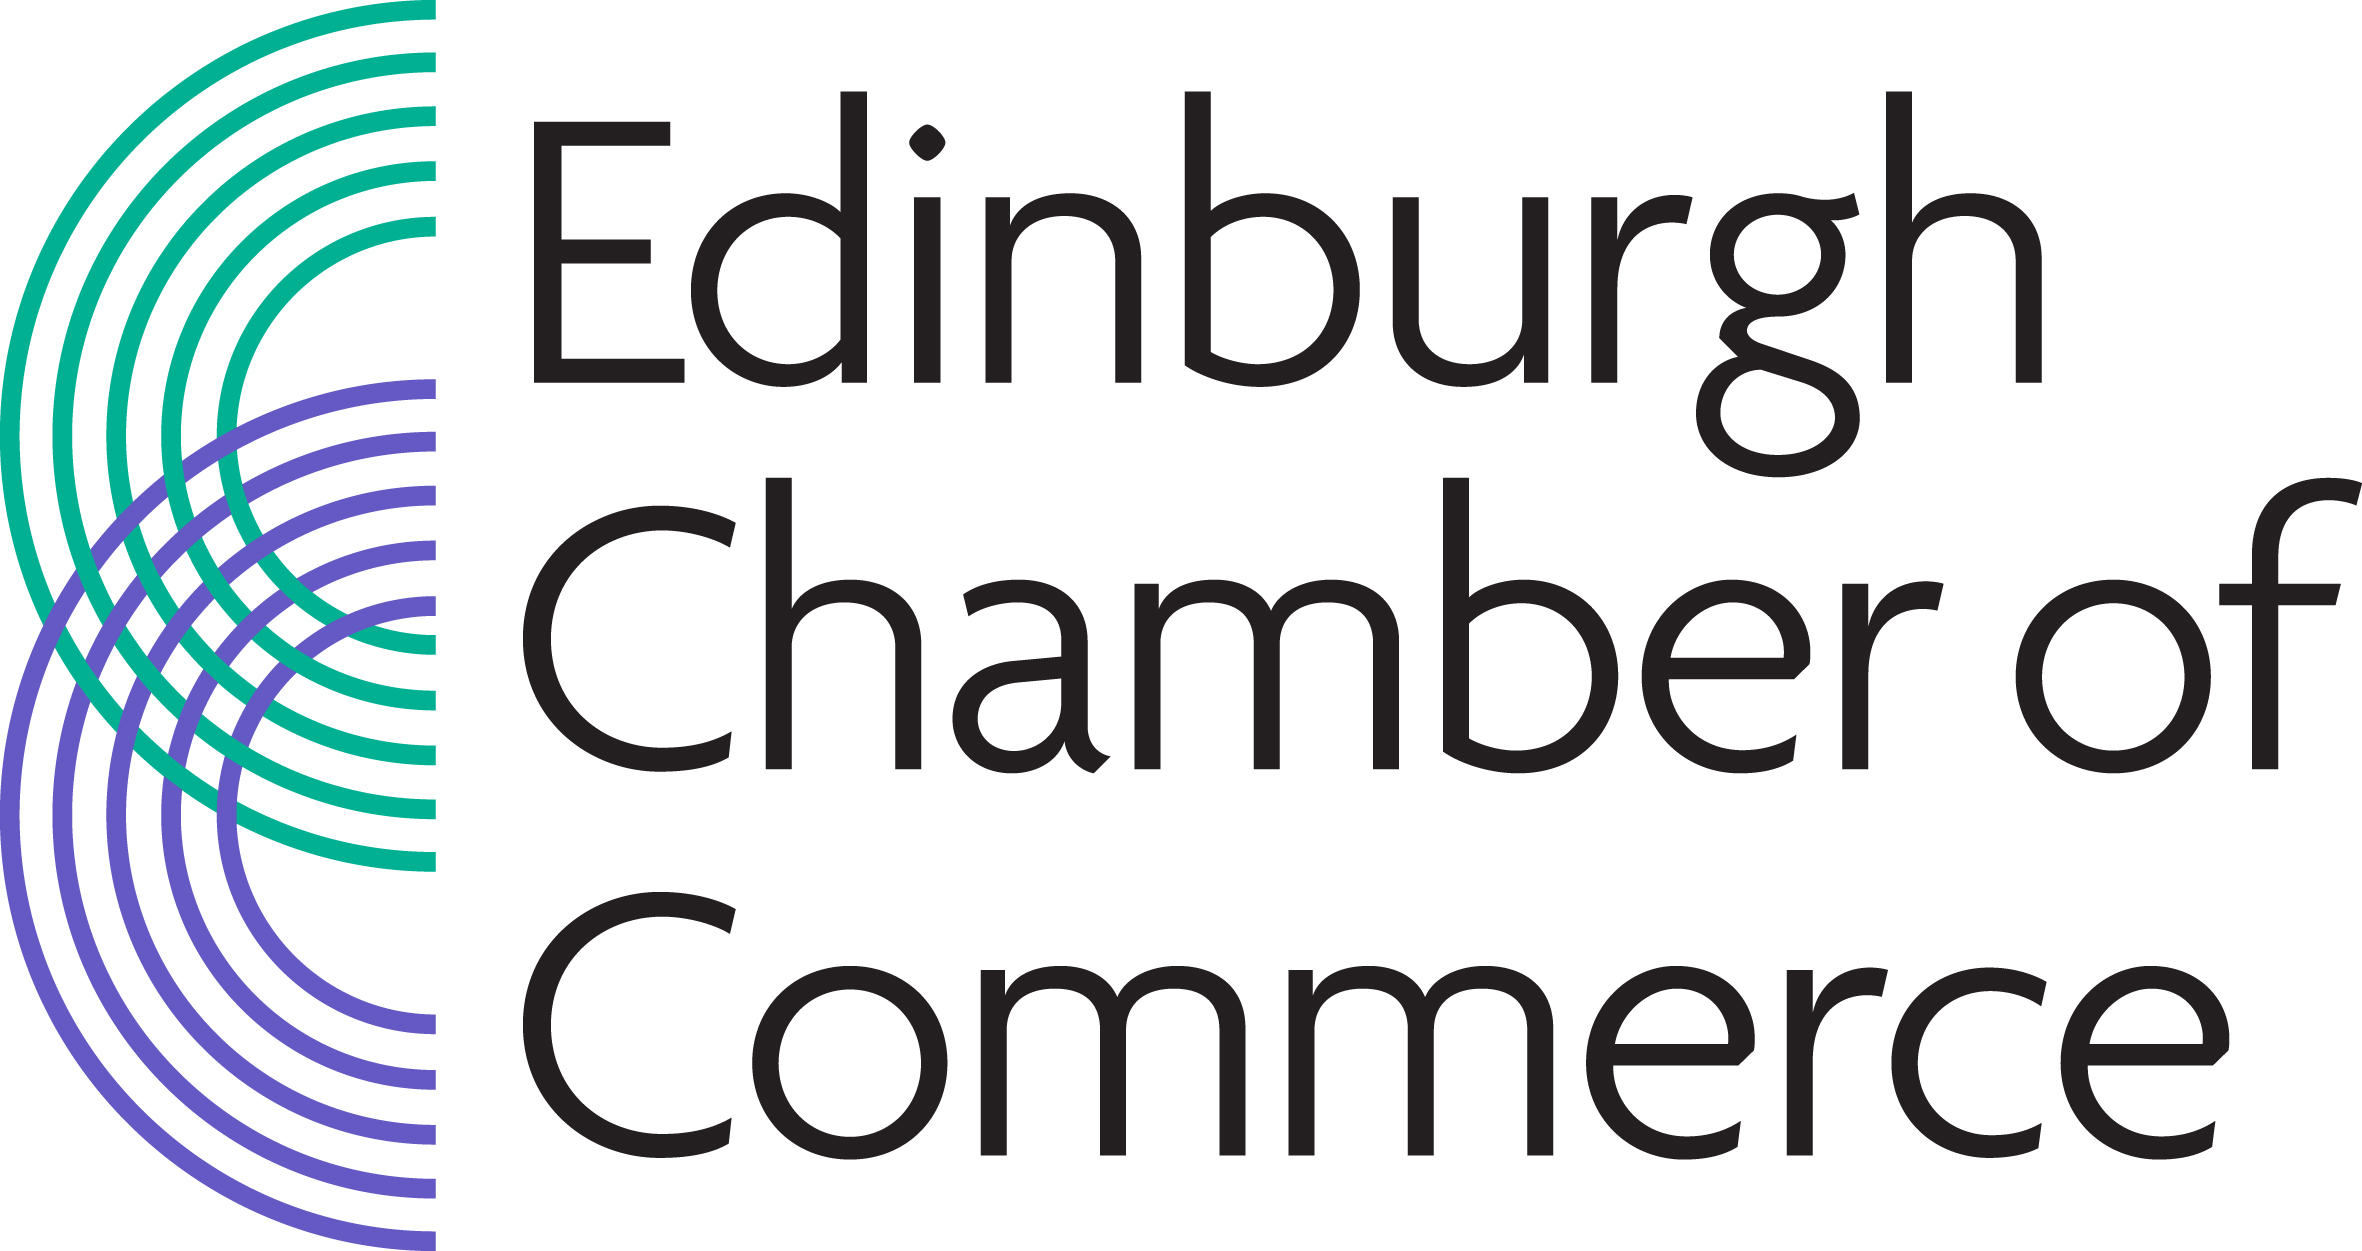 Terra Visus joins Edinburgh Chamber of Commerce